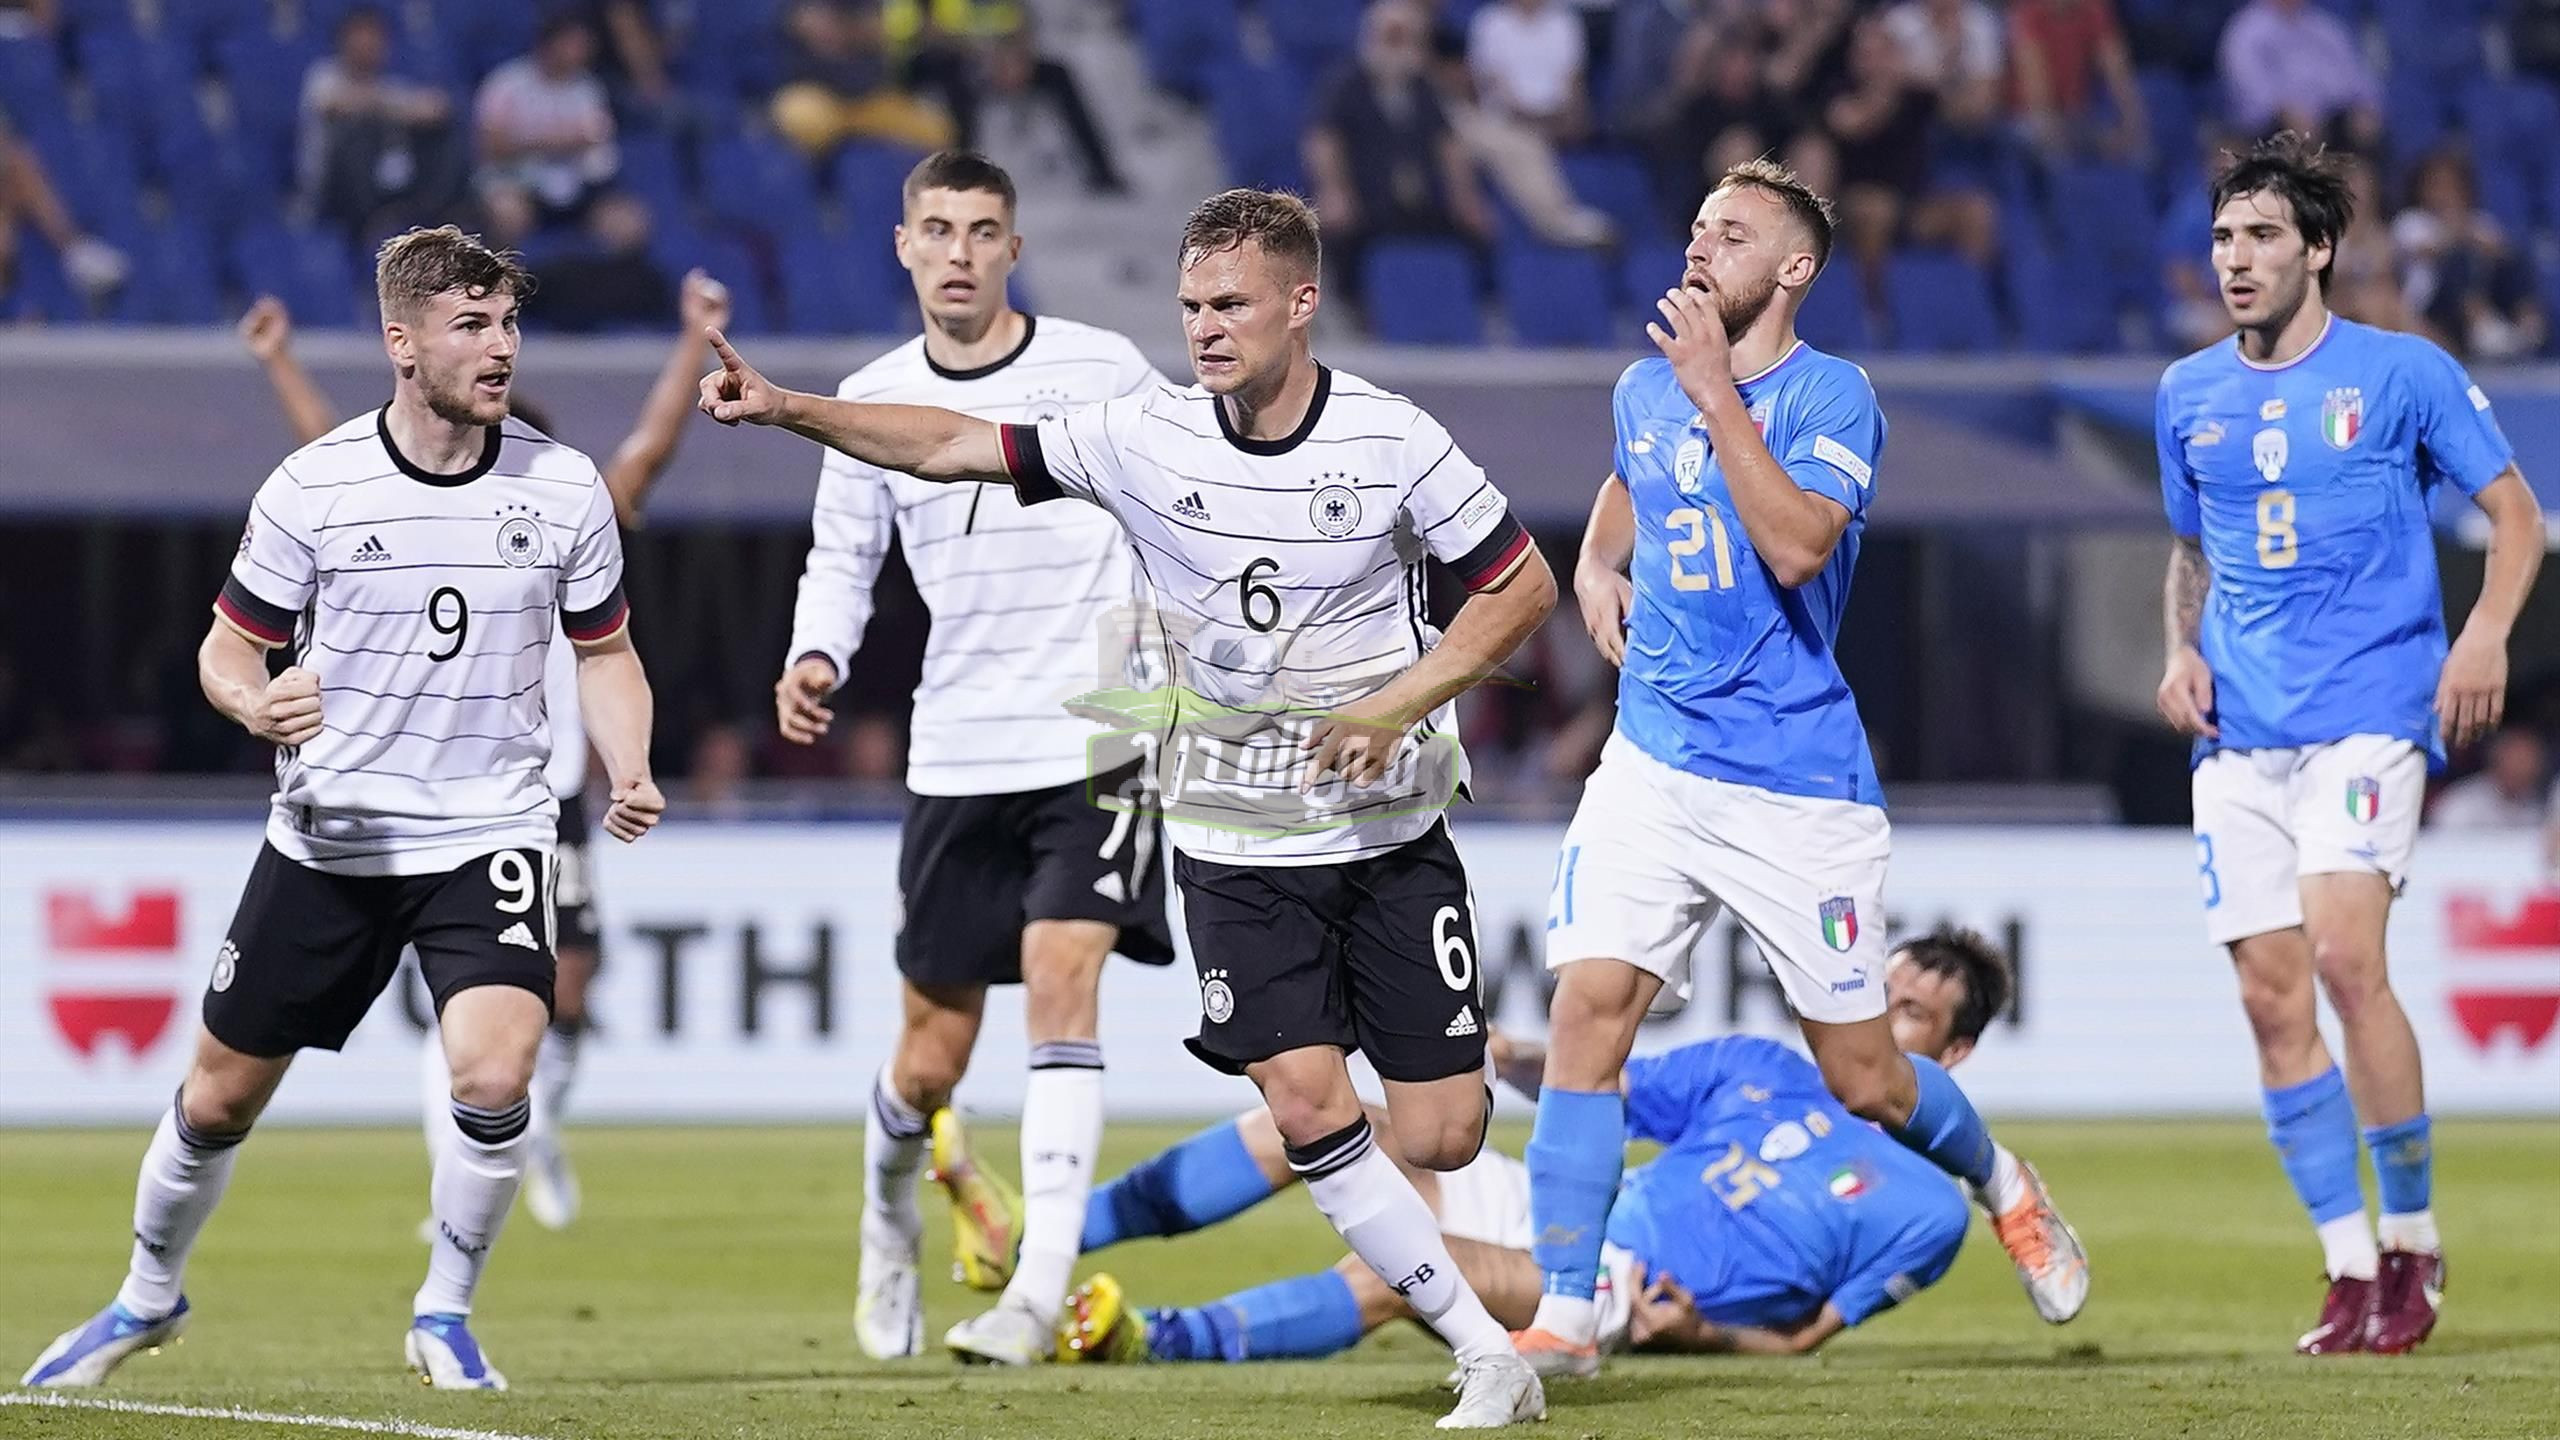 القنوات المفتوحة الناقلة لمباراة ألمانيا وإيطاليا اليوم في دوري الأمم الأوروبية